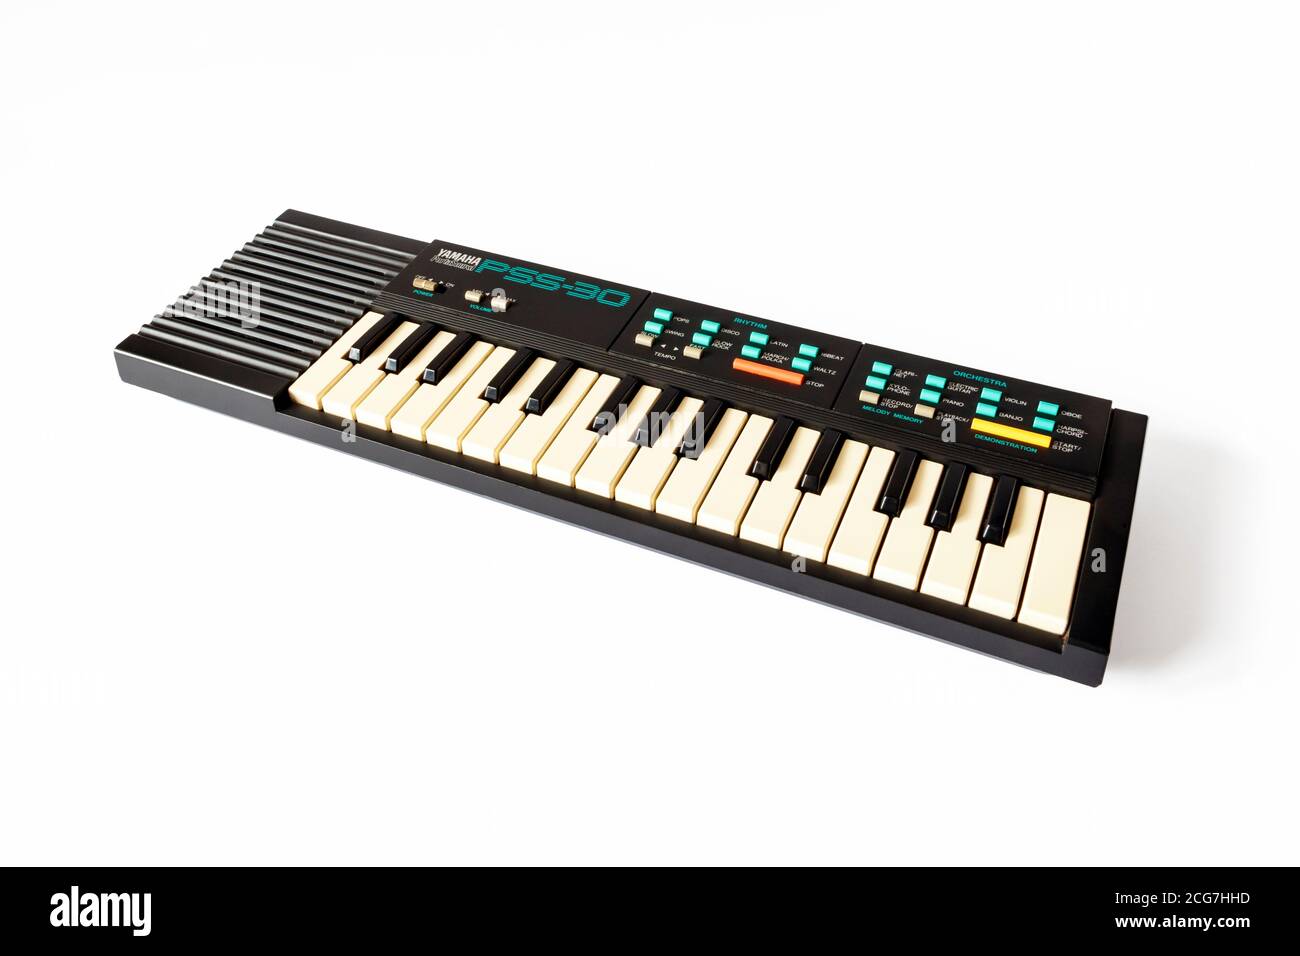 Un mini clavier musical électronique Yamaha PortaSound PSS-30 des années 80  isolé sur un fond blanc Photo Stock - Alamy